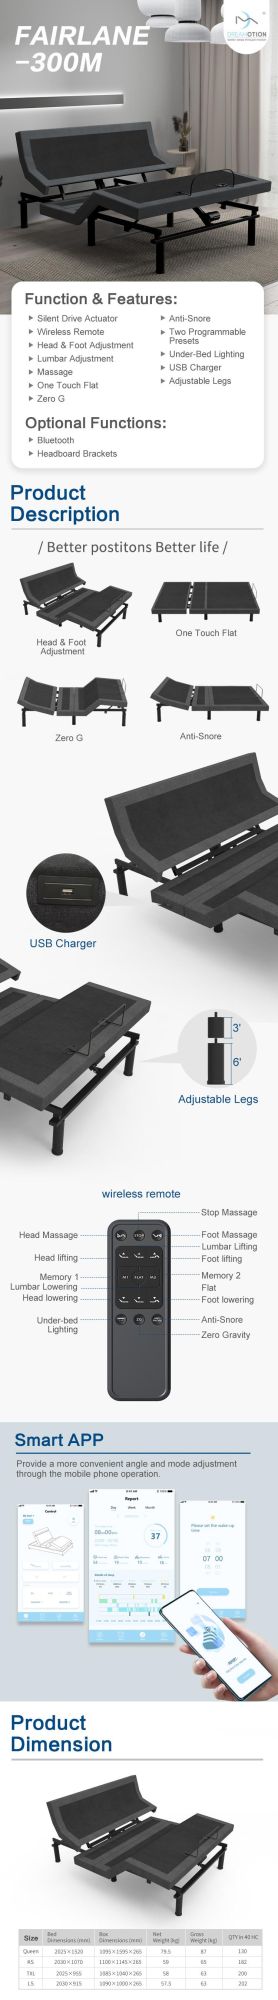 Wholesale Folding Adjustable Beds Base Split King Size Electric Massage Bed